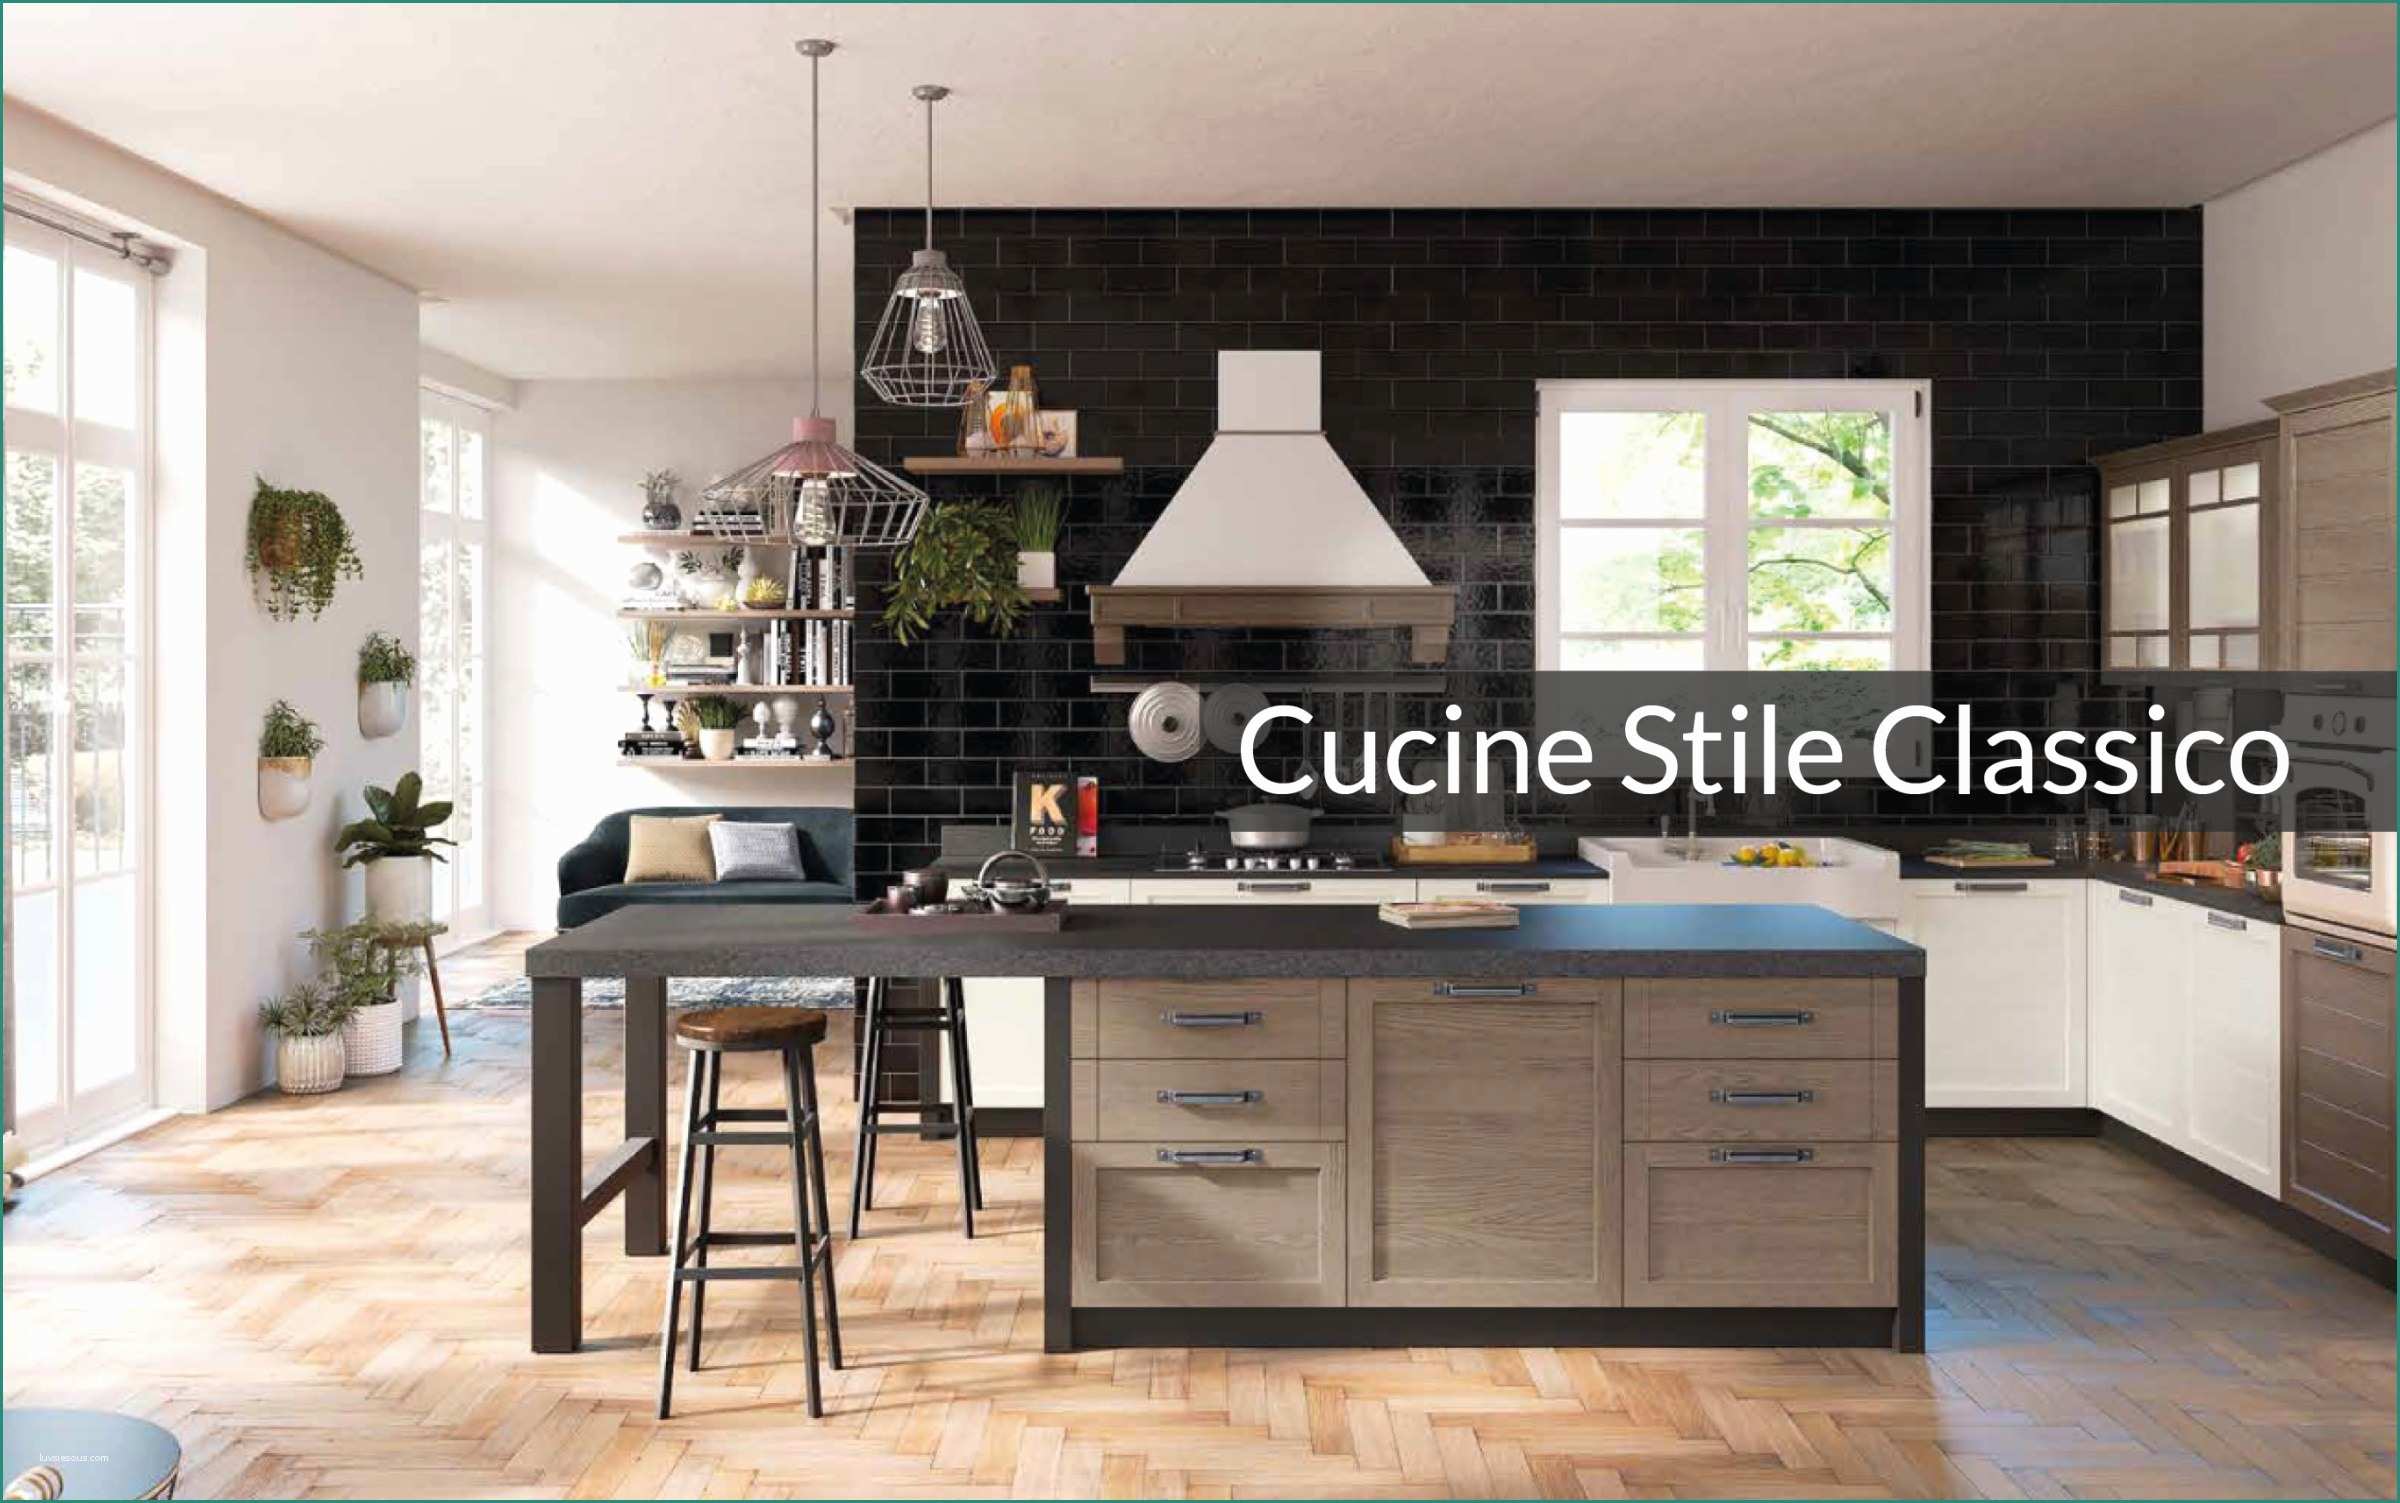 Cucina Classica Bianca E Cucine Stile Classico Old Line Gol Cucine Stile Classico